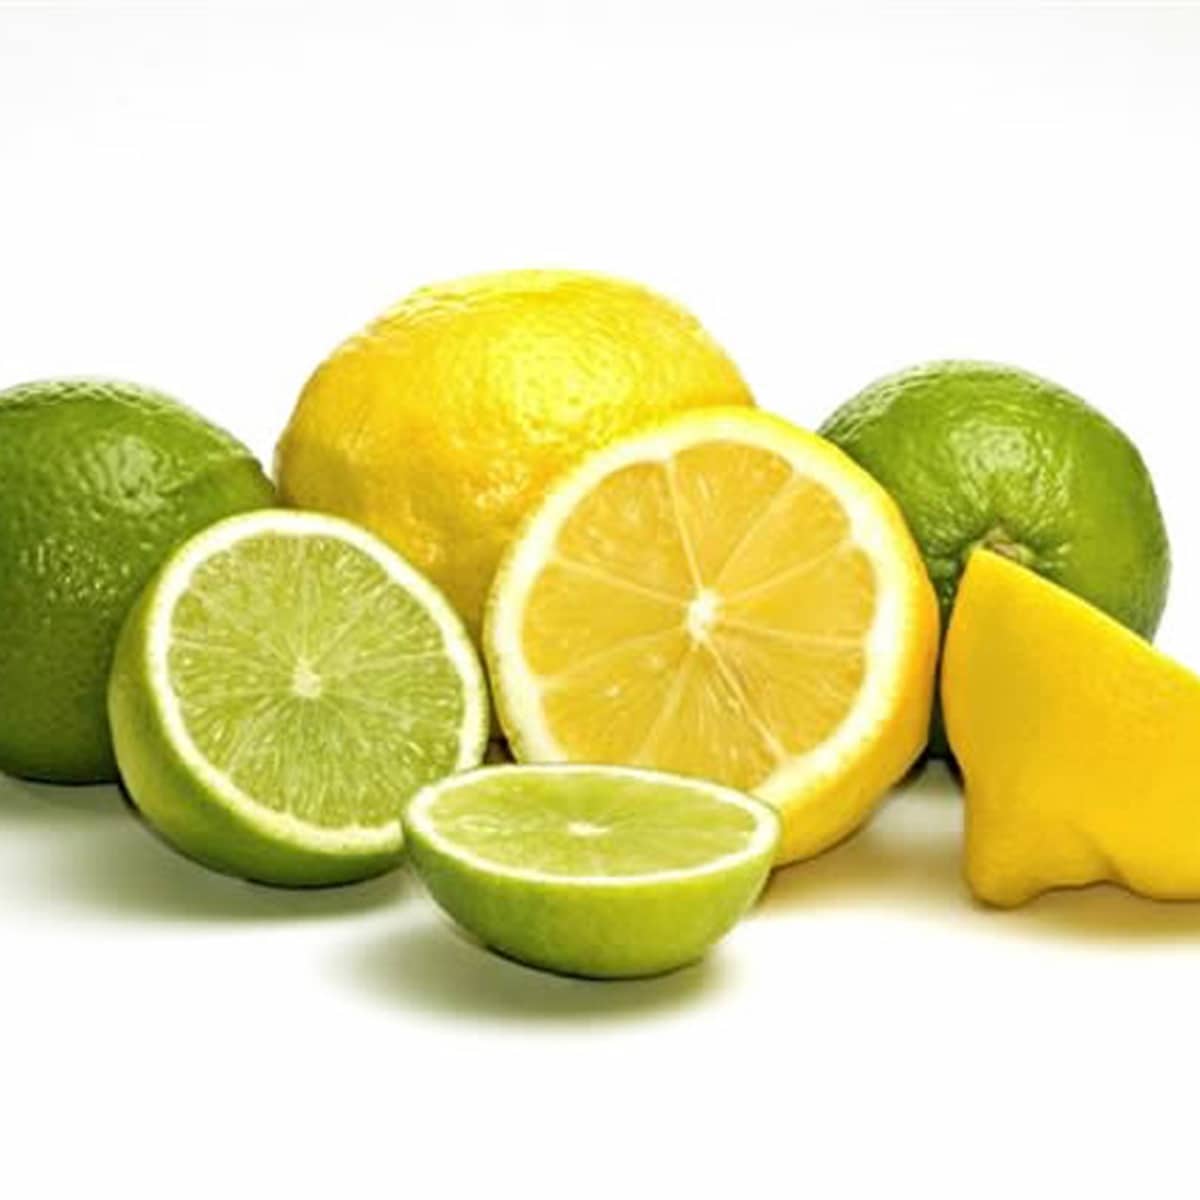 Some fresh lemons and limes.